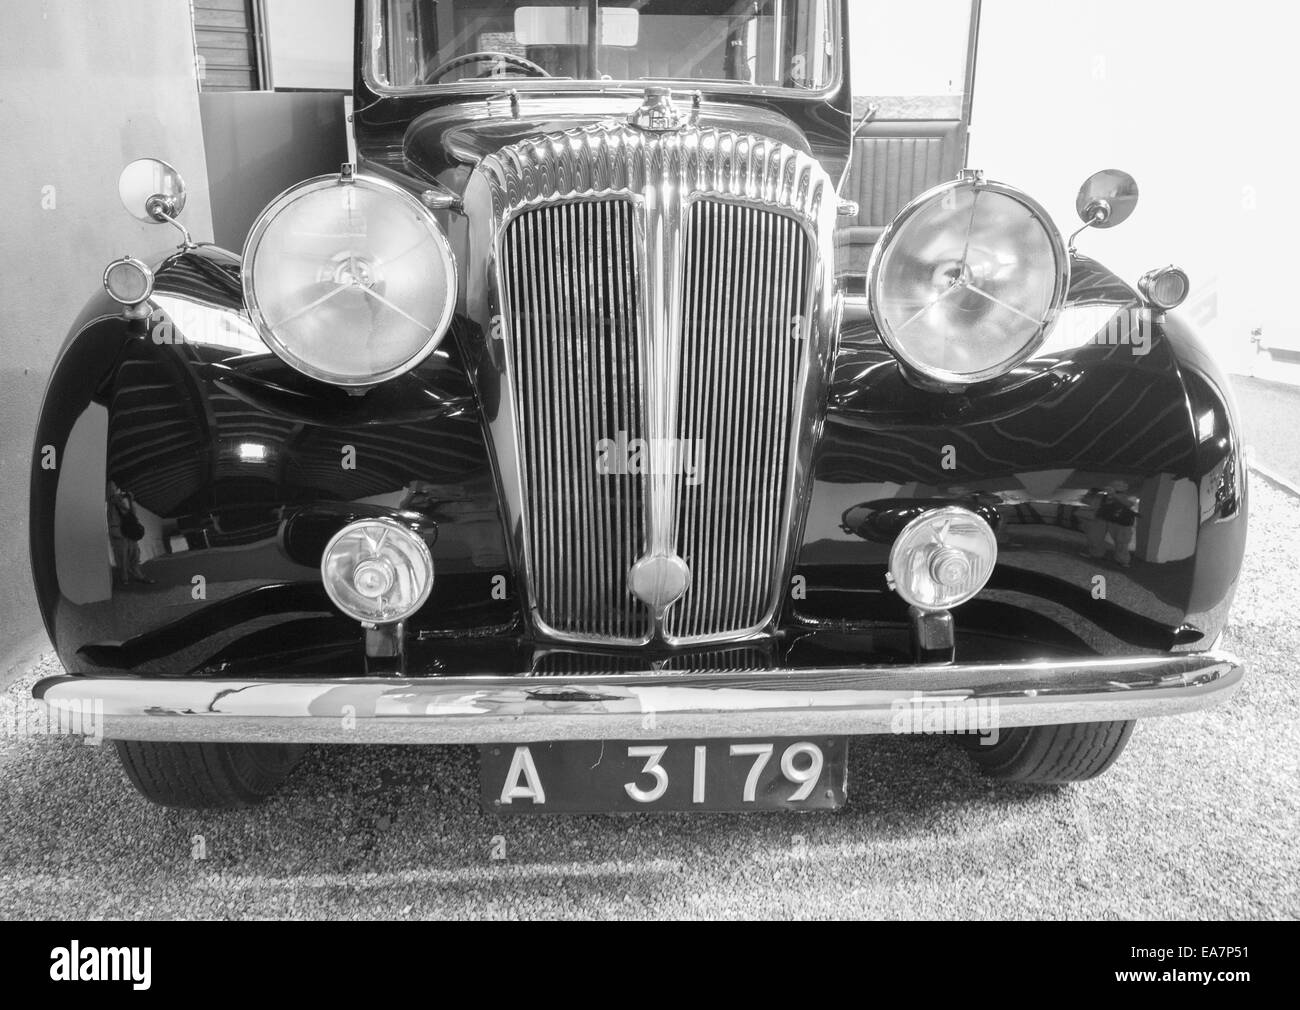 Daimler salon 4 litre, 1947, Sandringham, England Stock Photo